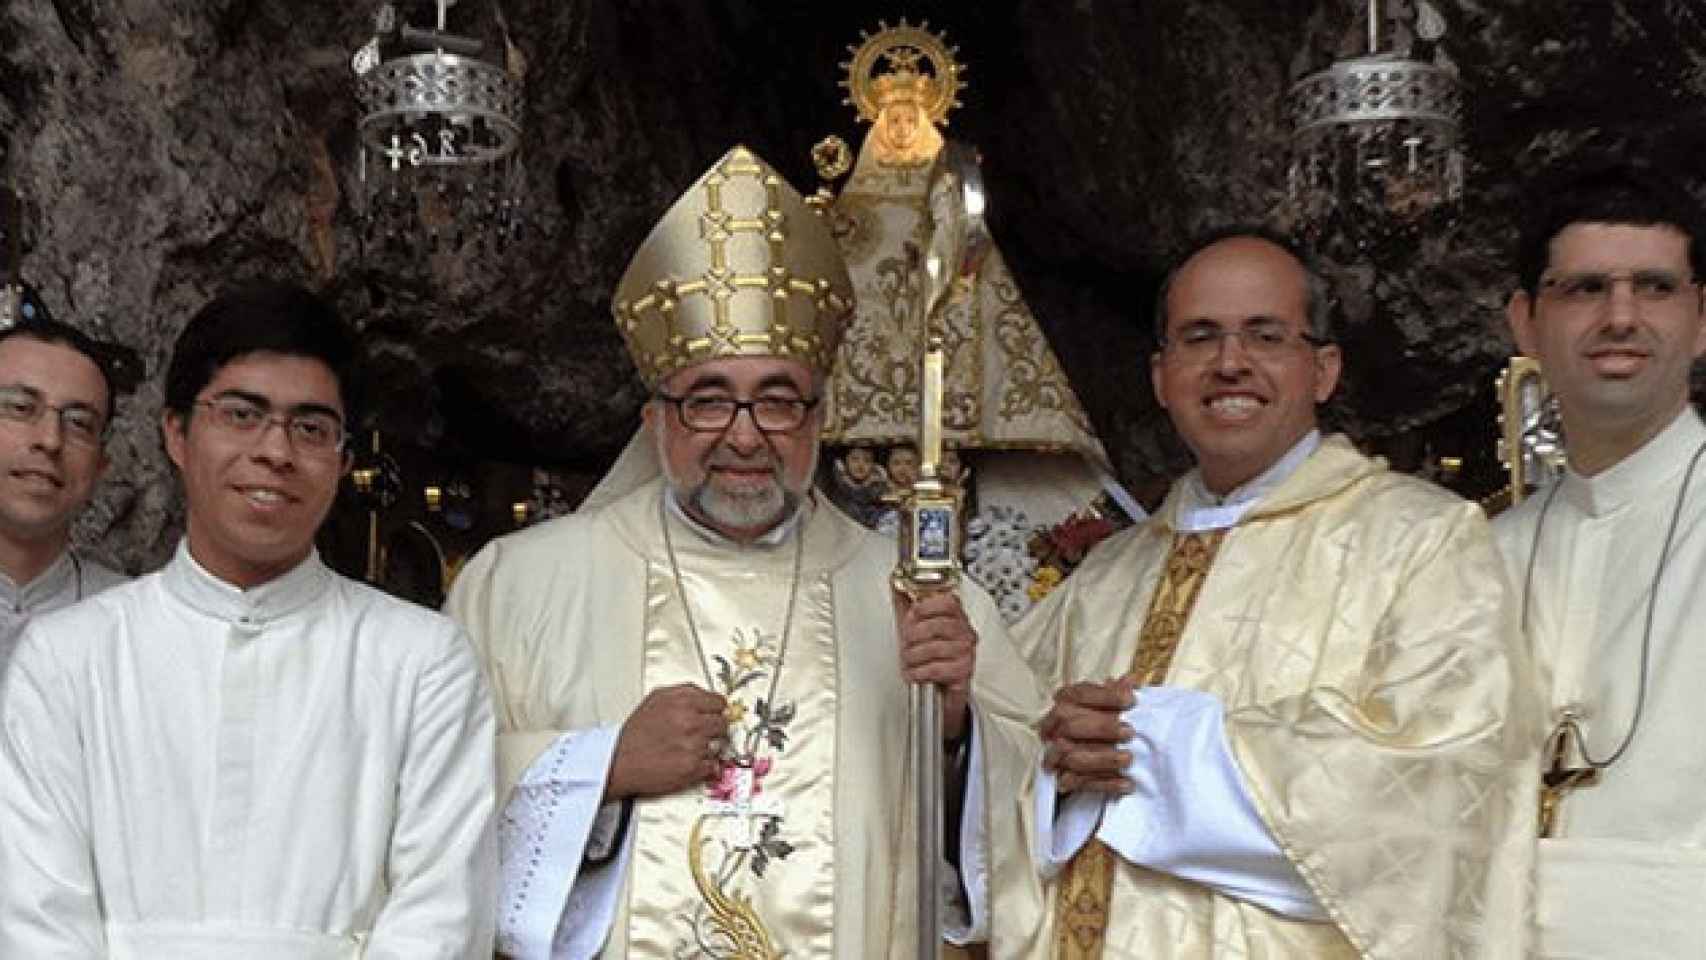 El arzobispo de Oviedo, Jesús Sanz, durante una ceremonia / CG